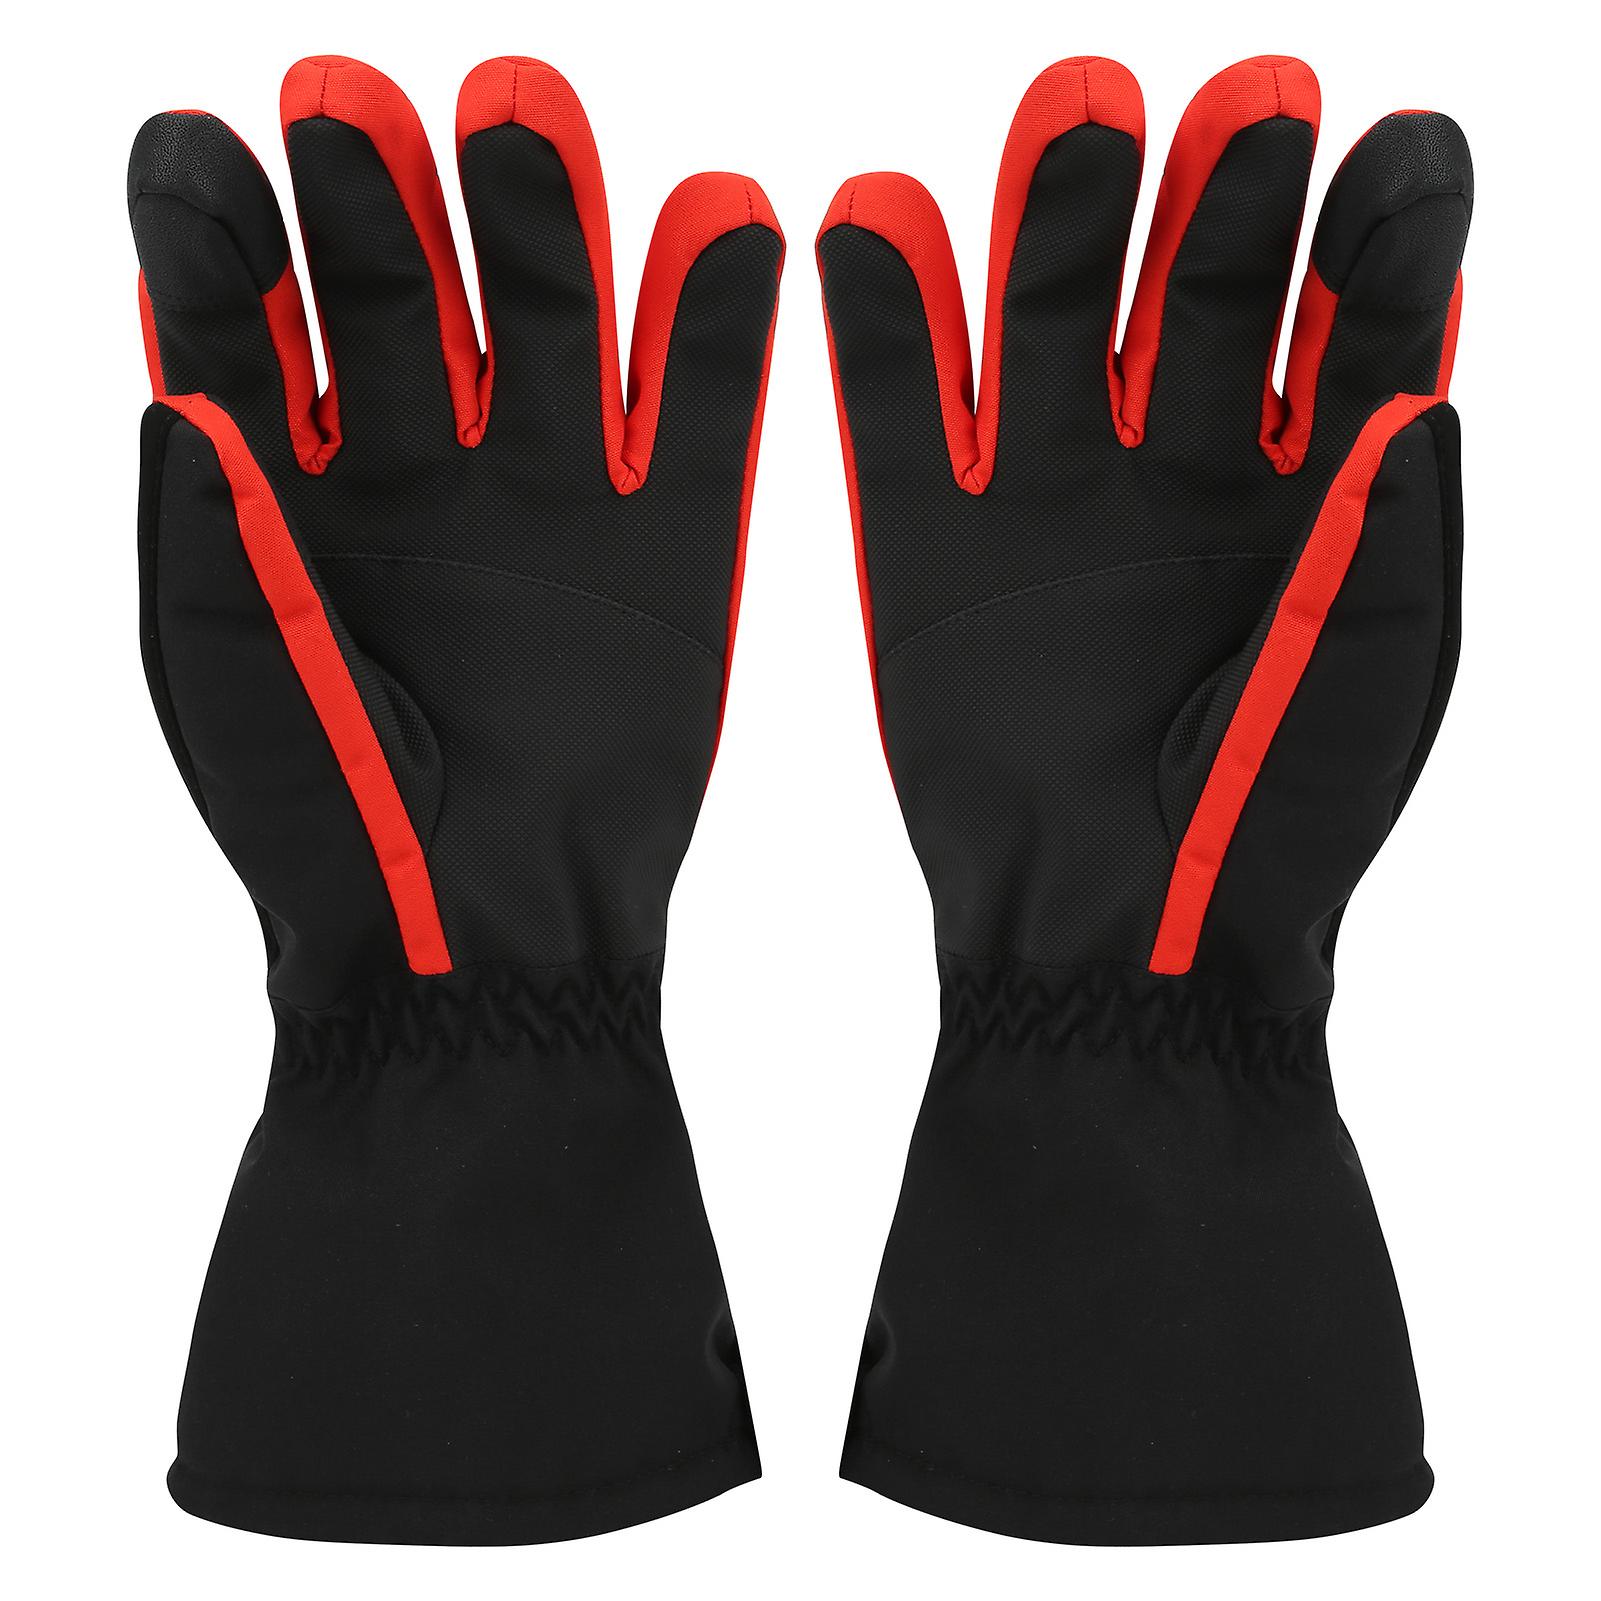 1pair Winter Outdoor Sport Skiing Brushed Lining Waterproof Keep Warm Antislip Glovesl Red Black